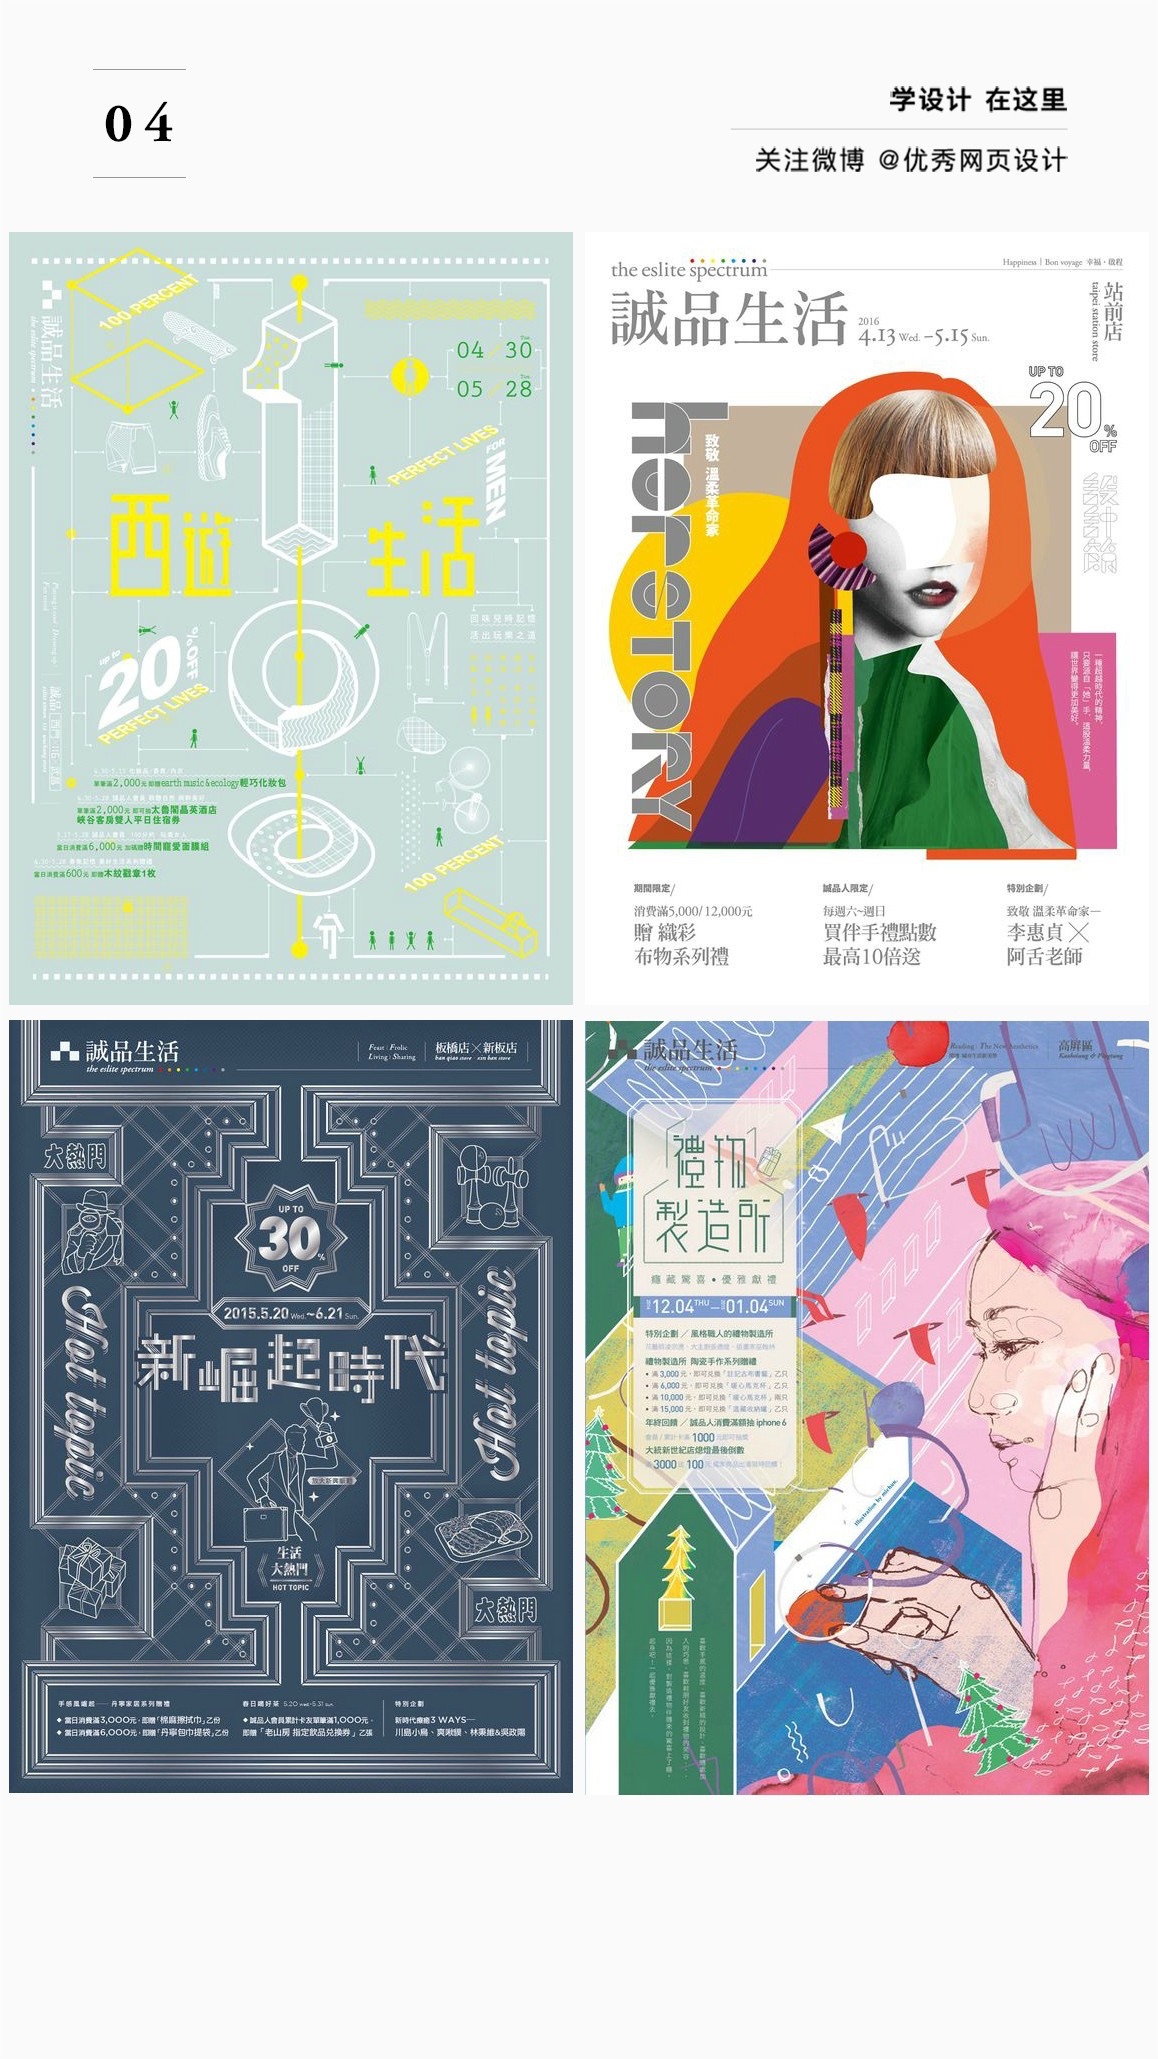 几十张汉字海报的布局排版形式